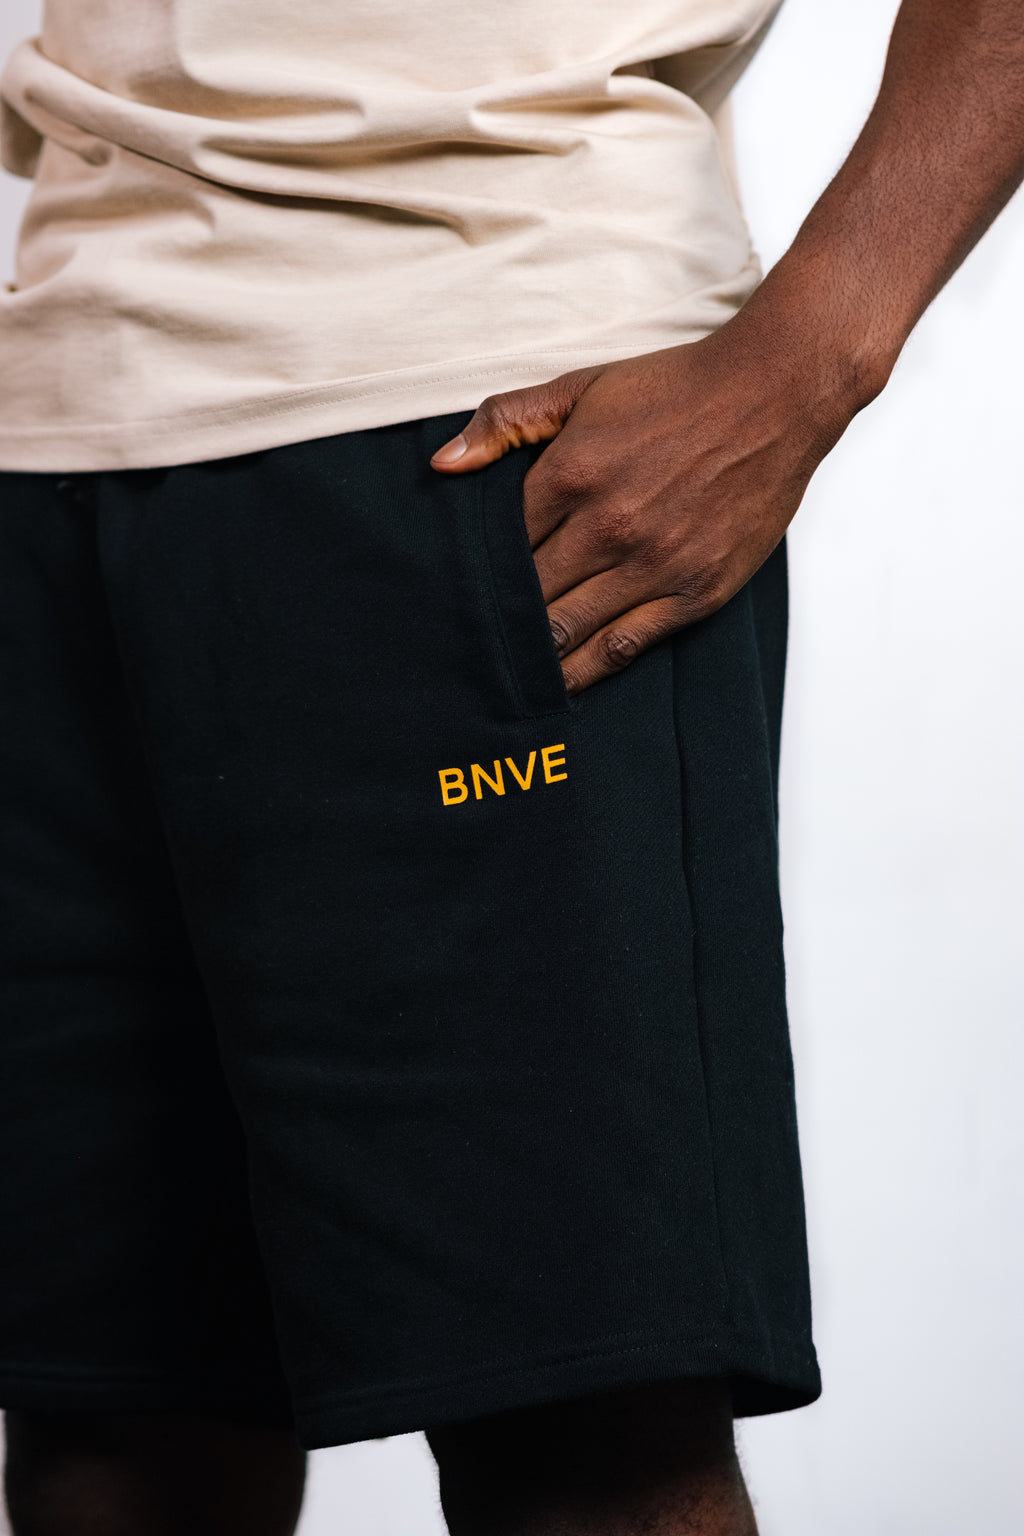 BNVE Shorts Black